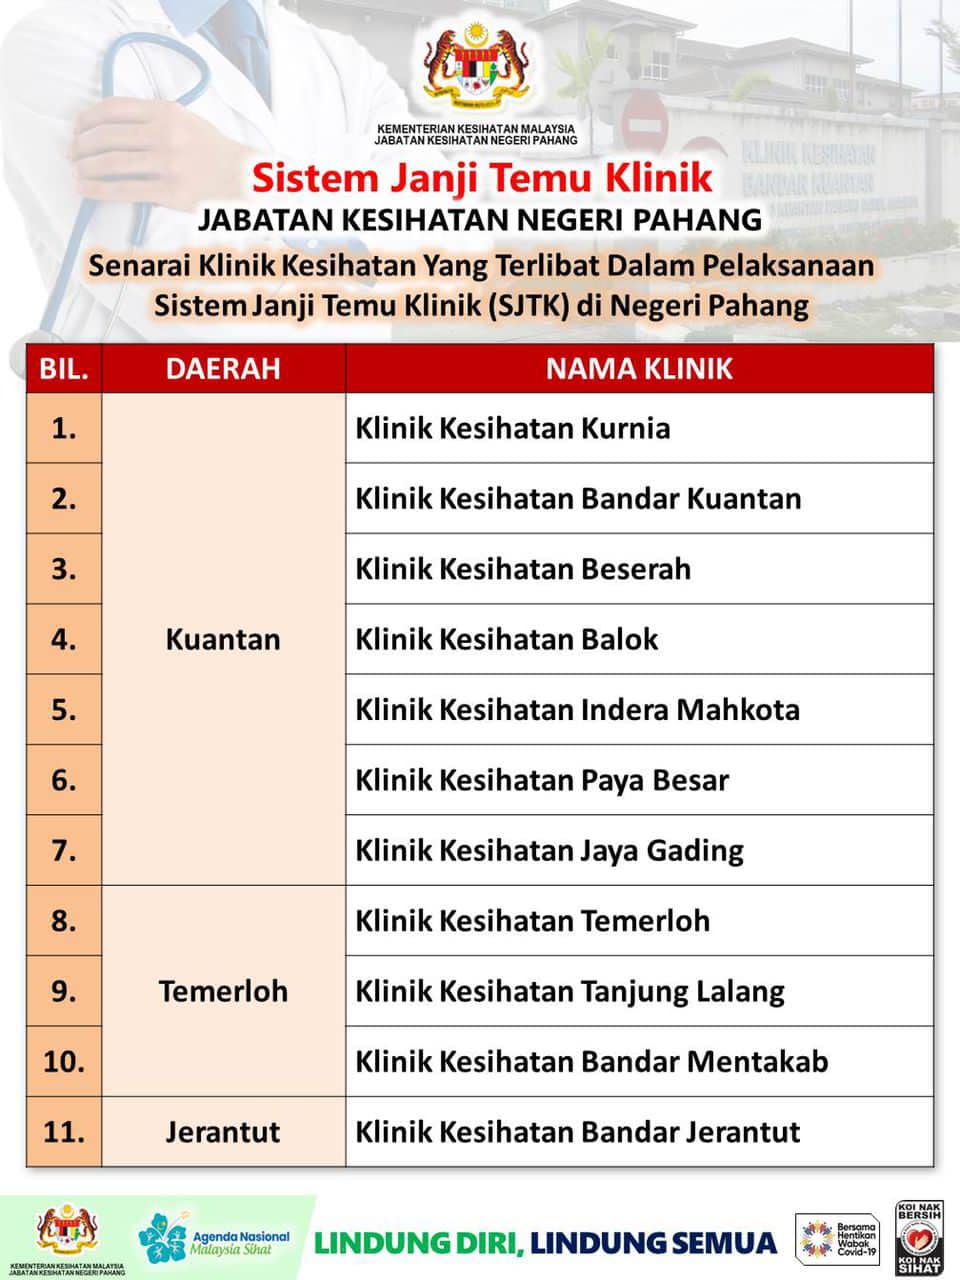 Sistem Janji Temu Klinik Kesihatan Kkm Di Portal Kerajaan Malaysia Bagi 11 Klinik Kesihatan Di Negeri Pahang Laman Web Mkn